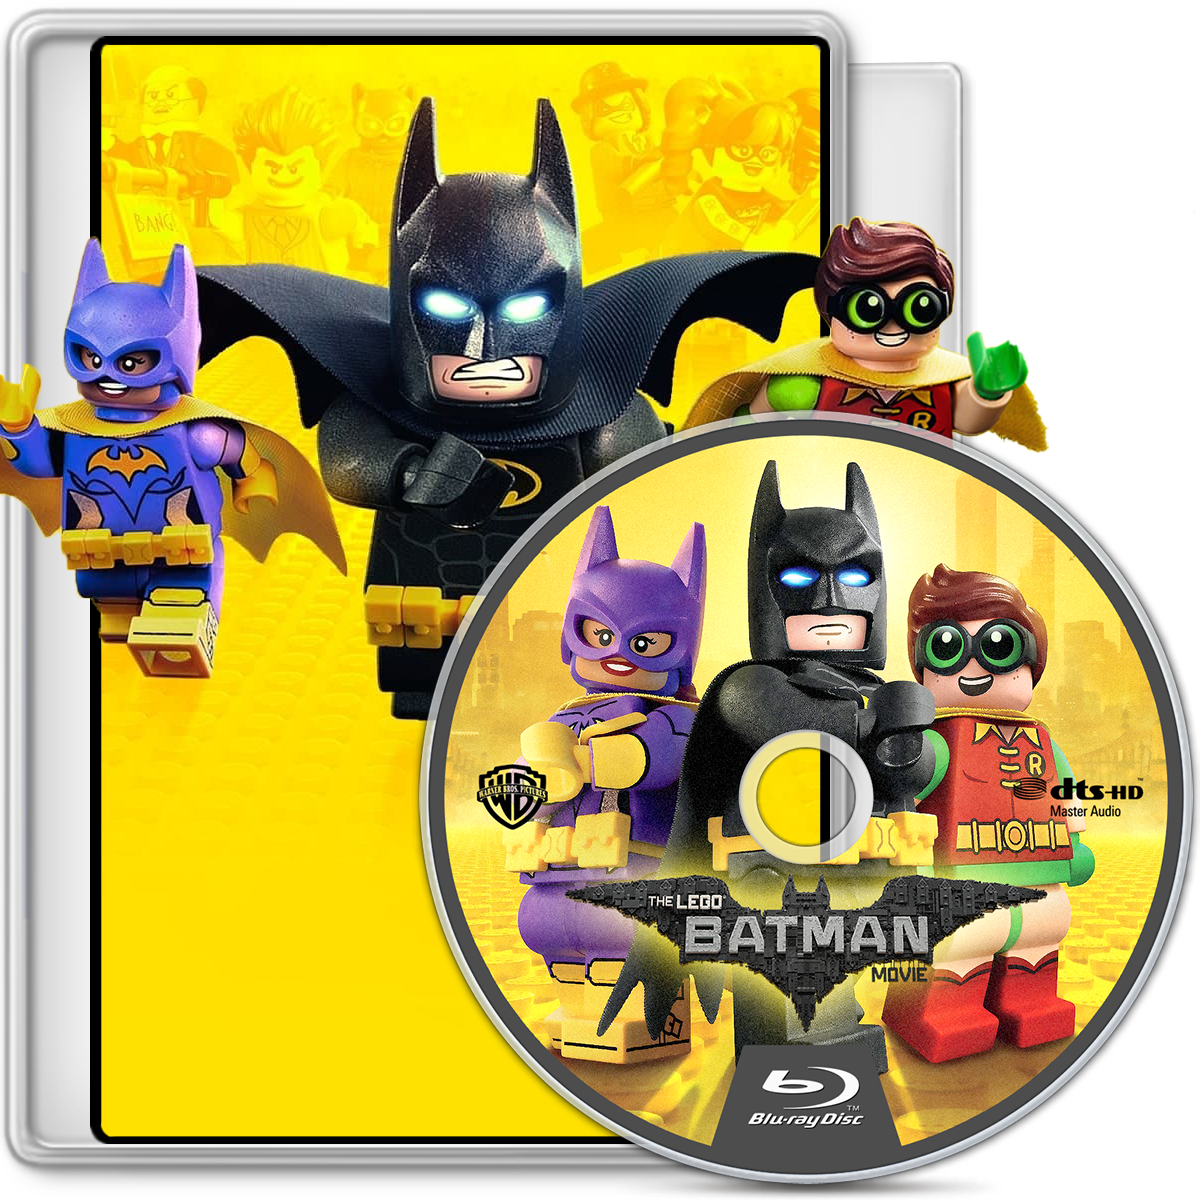 The Lego Batman Movie (Blu-ray + DVD) 